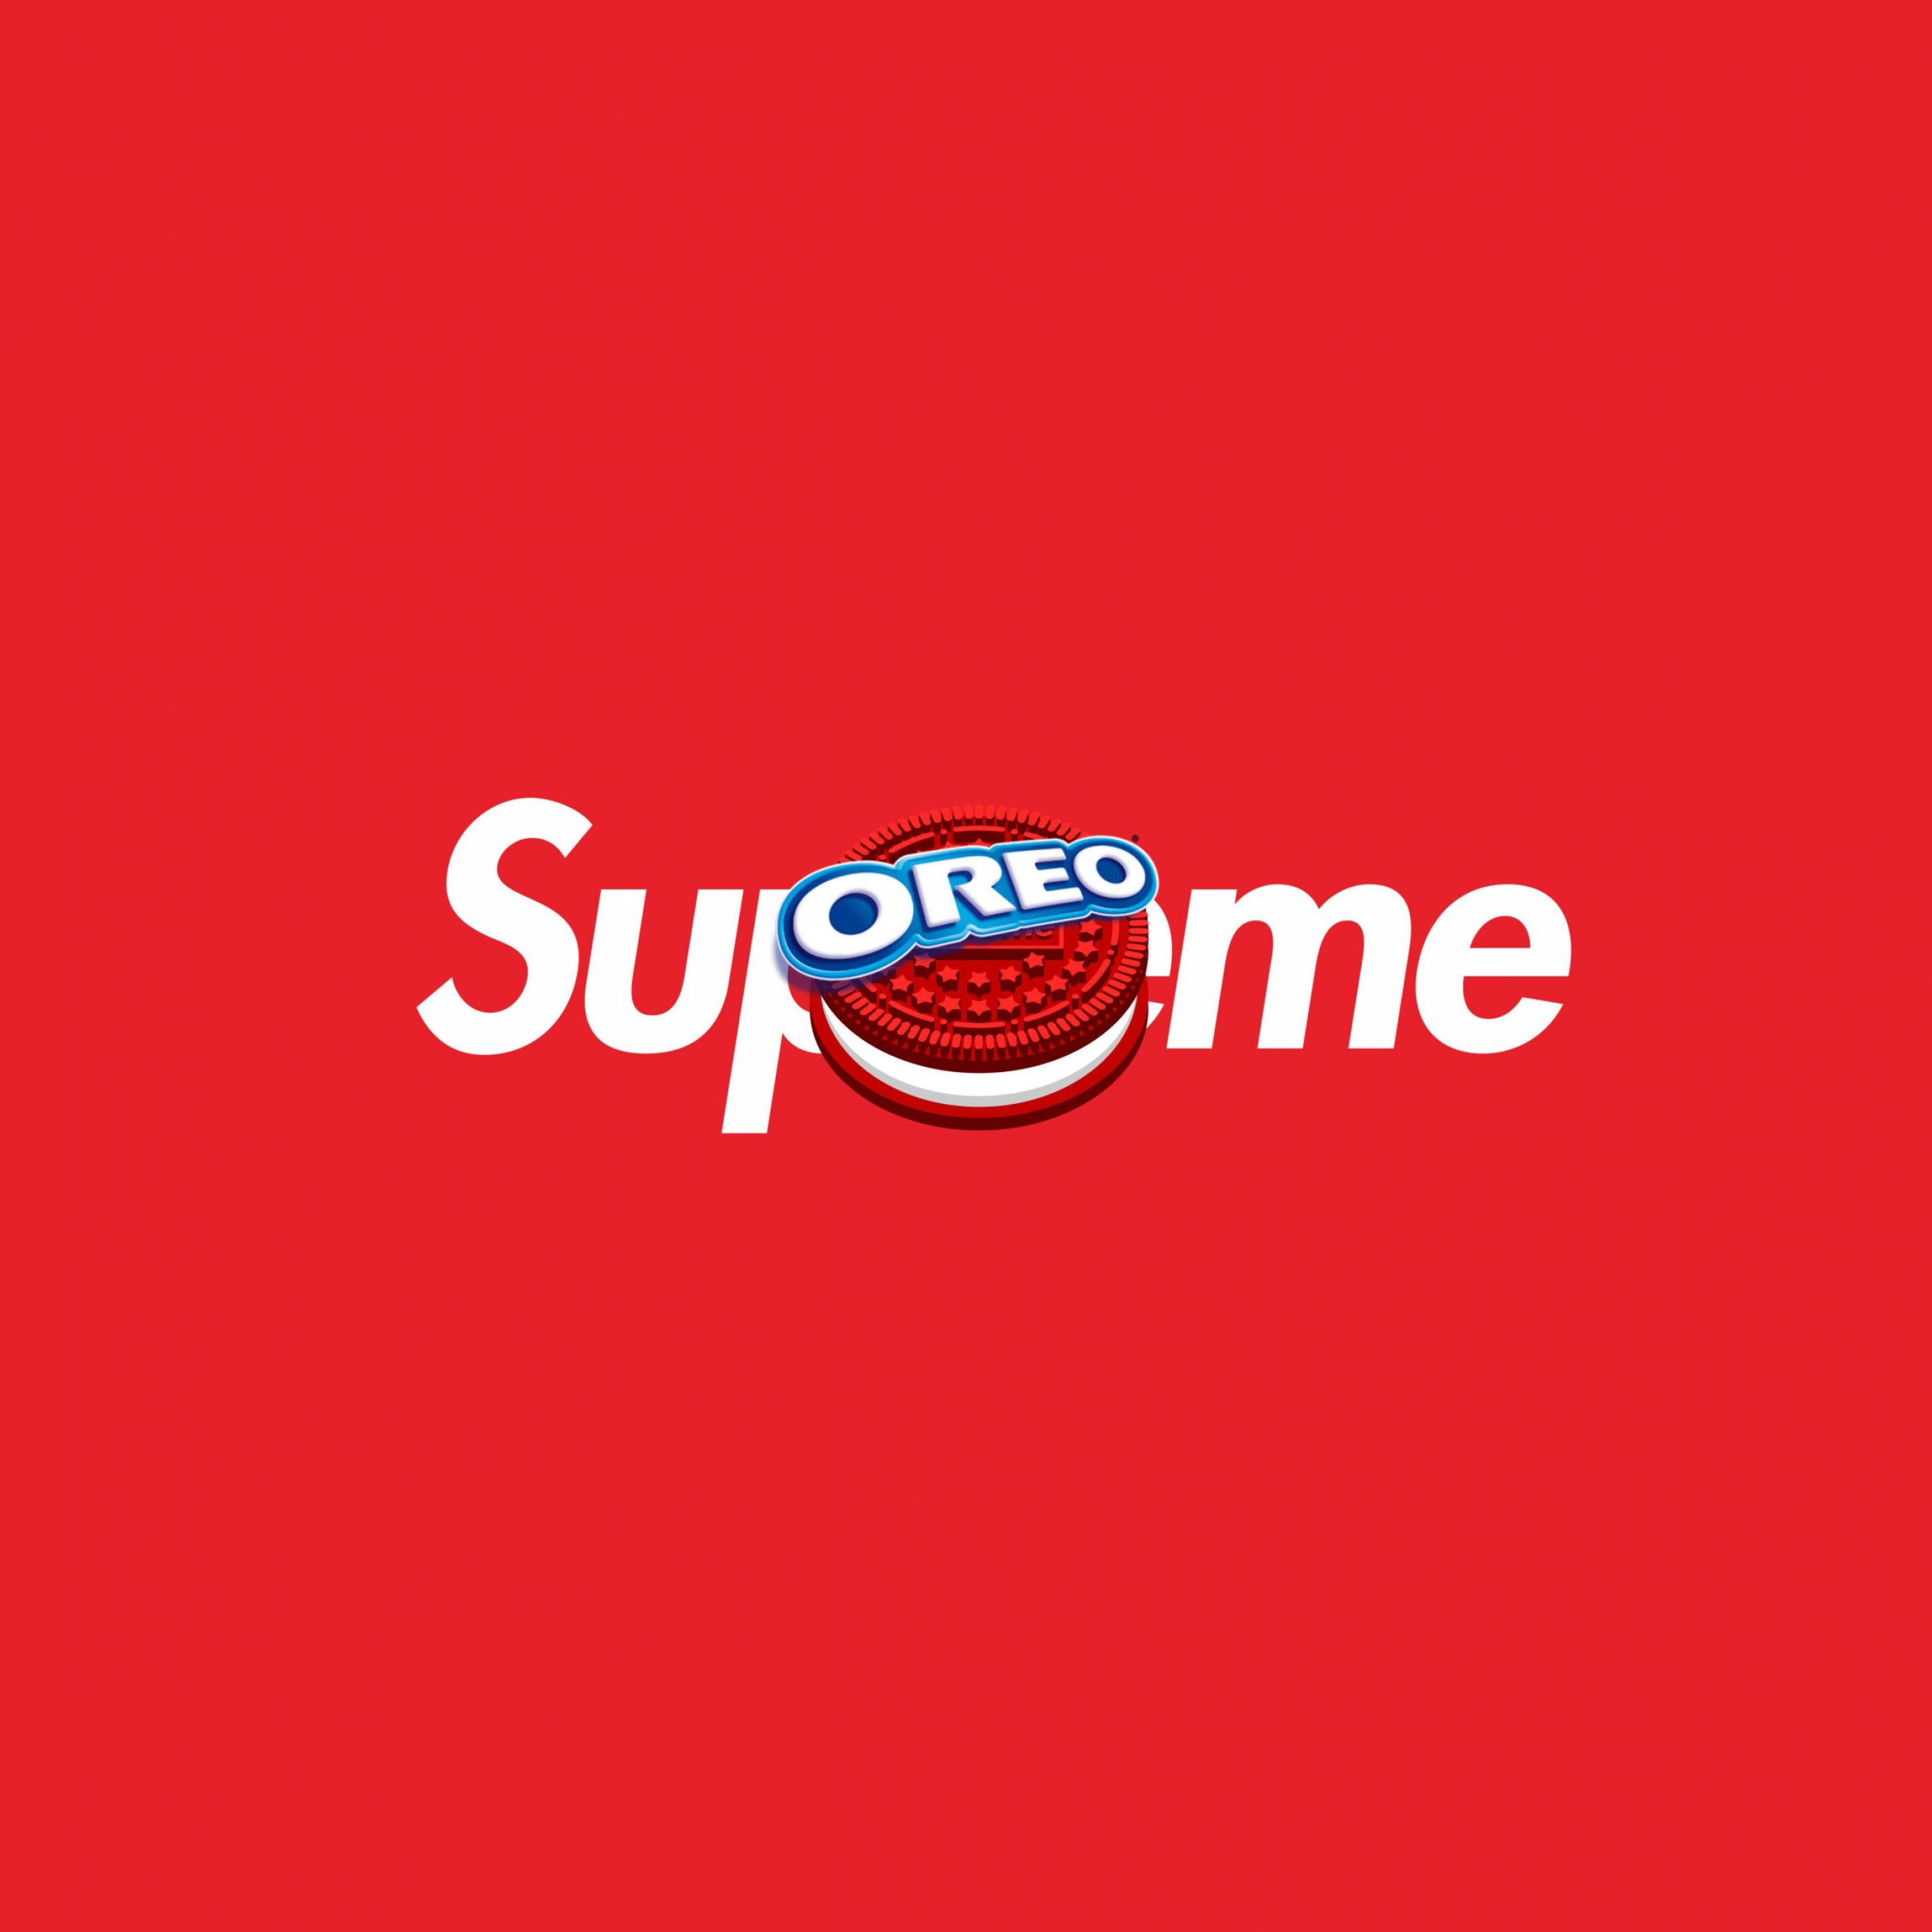 Supreme x oreo 2019 - Oreo